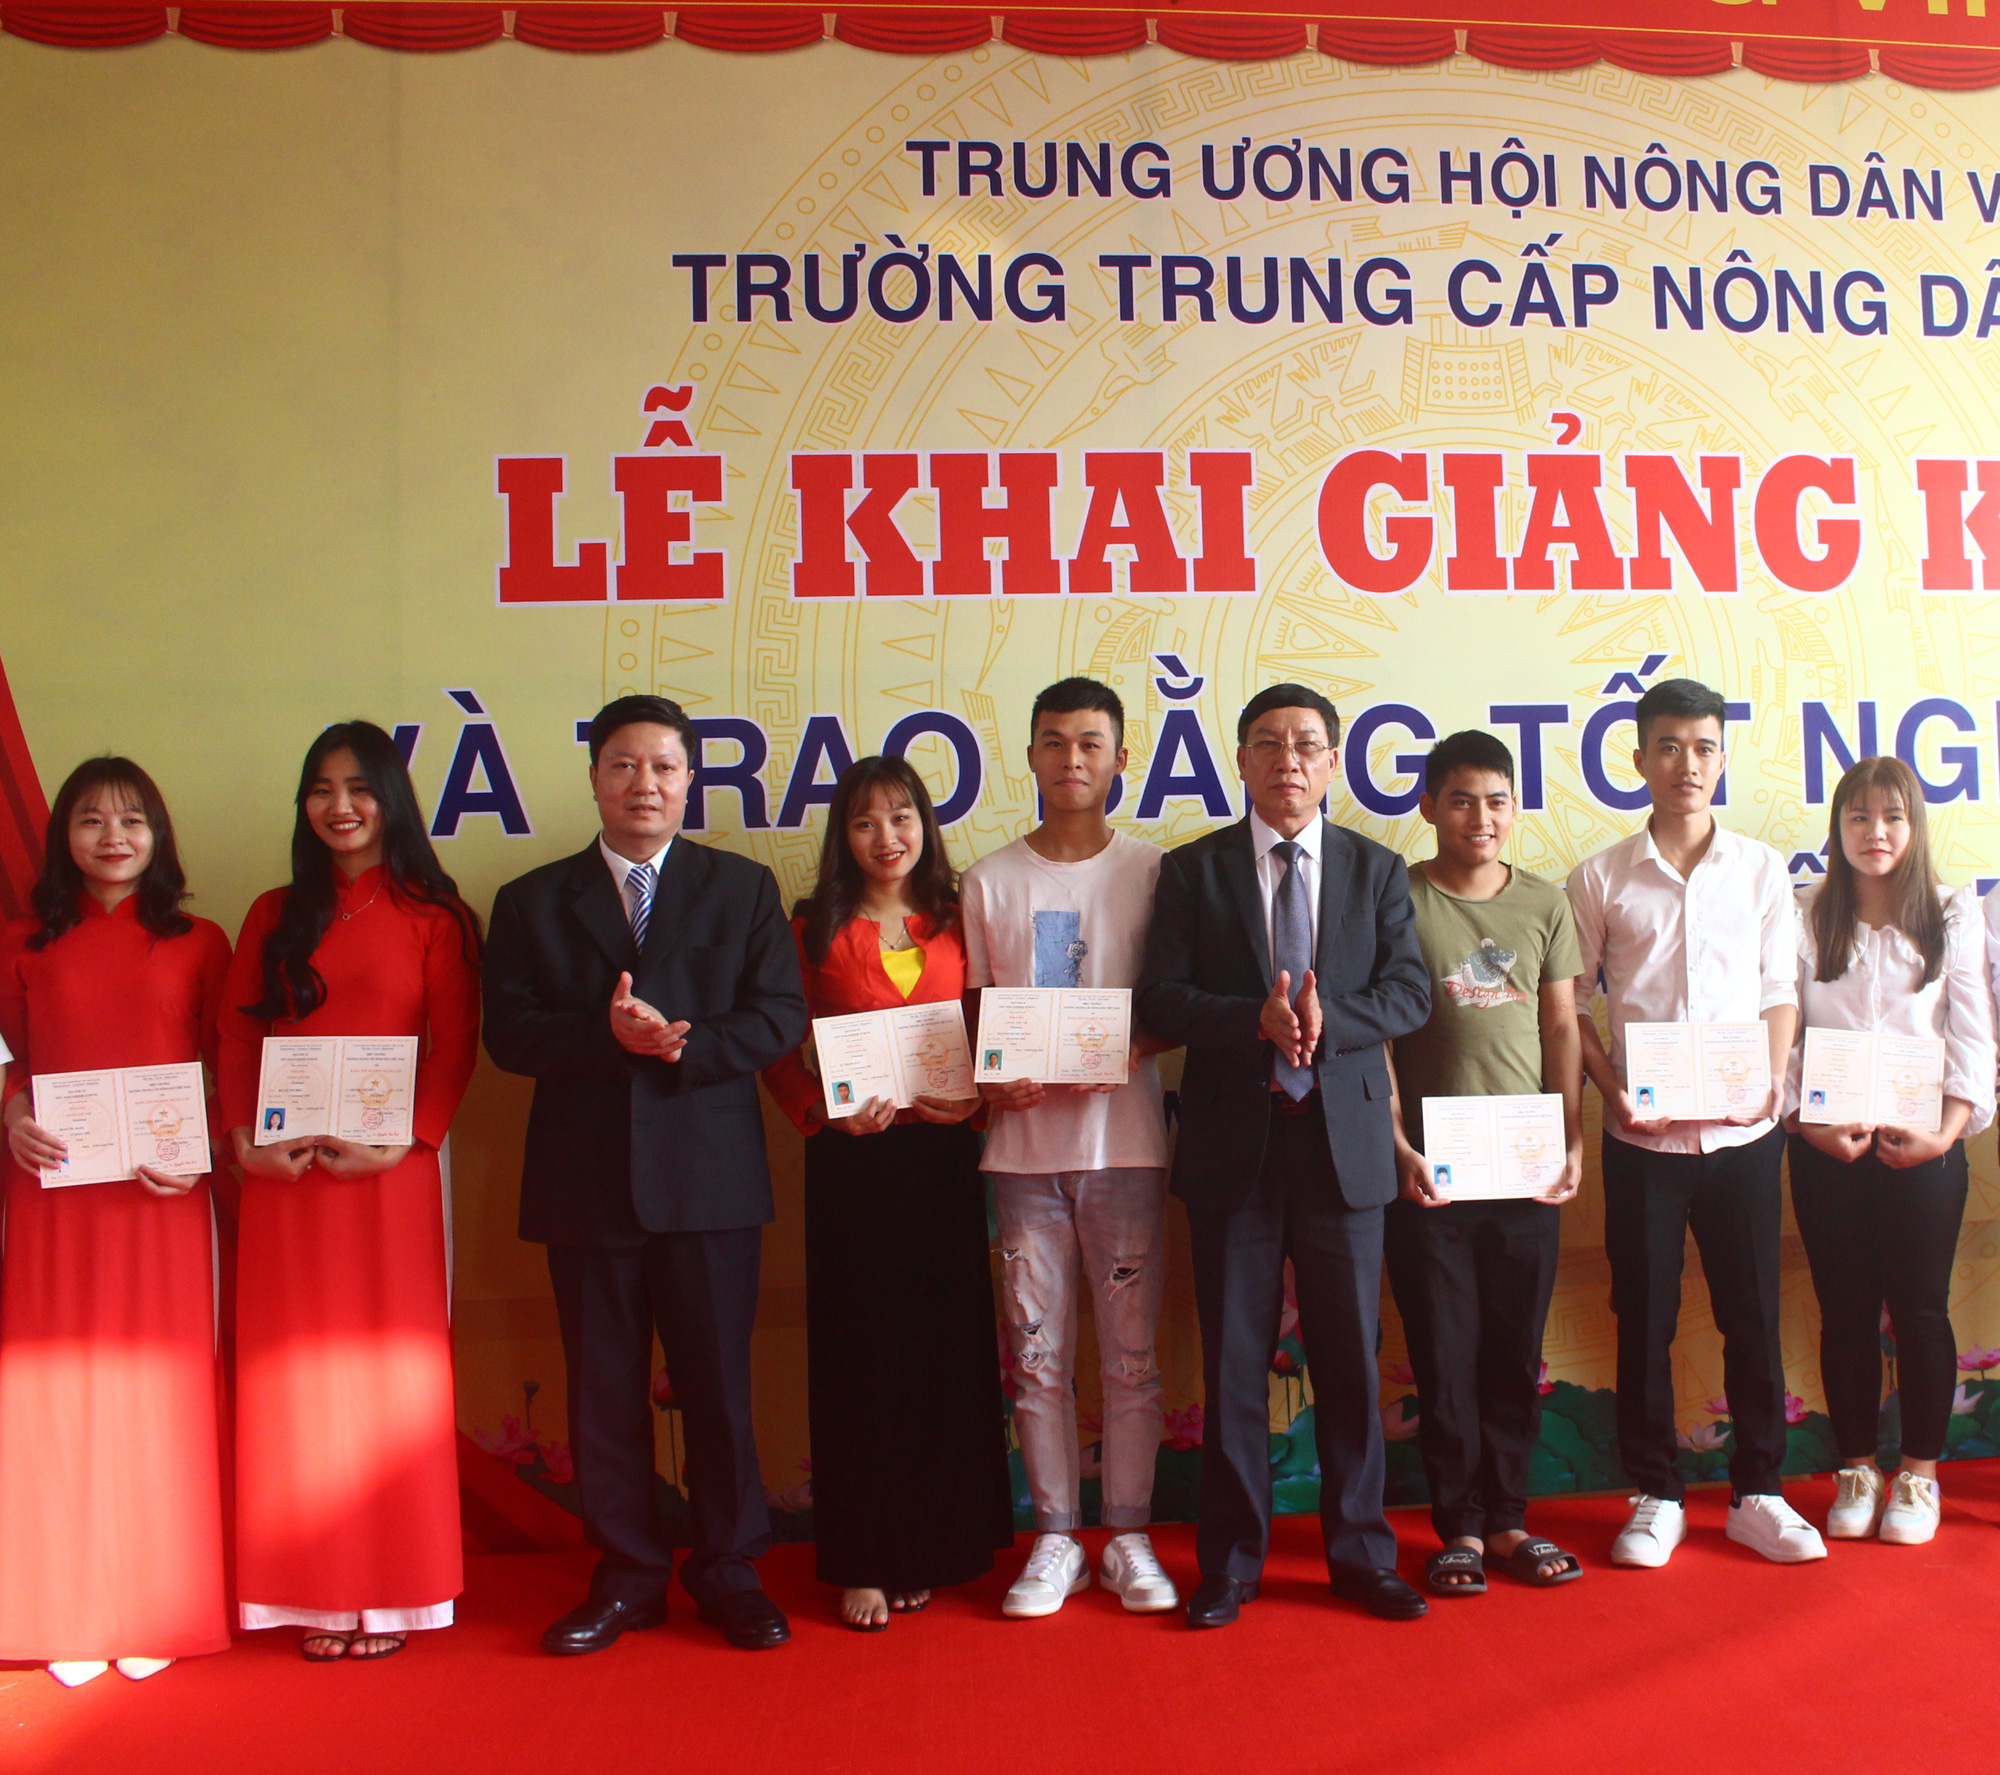 Trường Trung cấp Nông dân Việt Nam: Nâng cao chất lượng đào tạo nghề, nhân rộng mô hình hay - Ảnh 3.